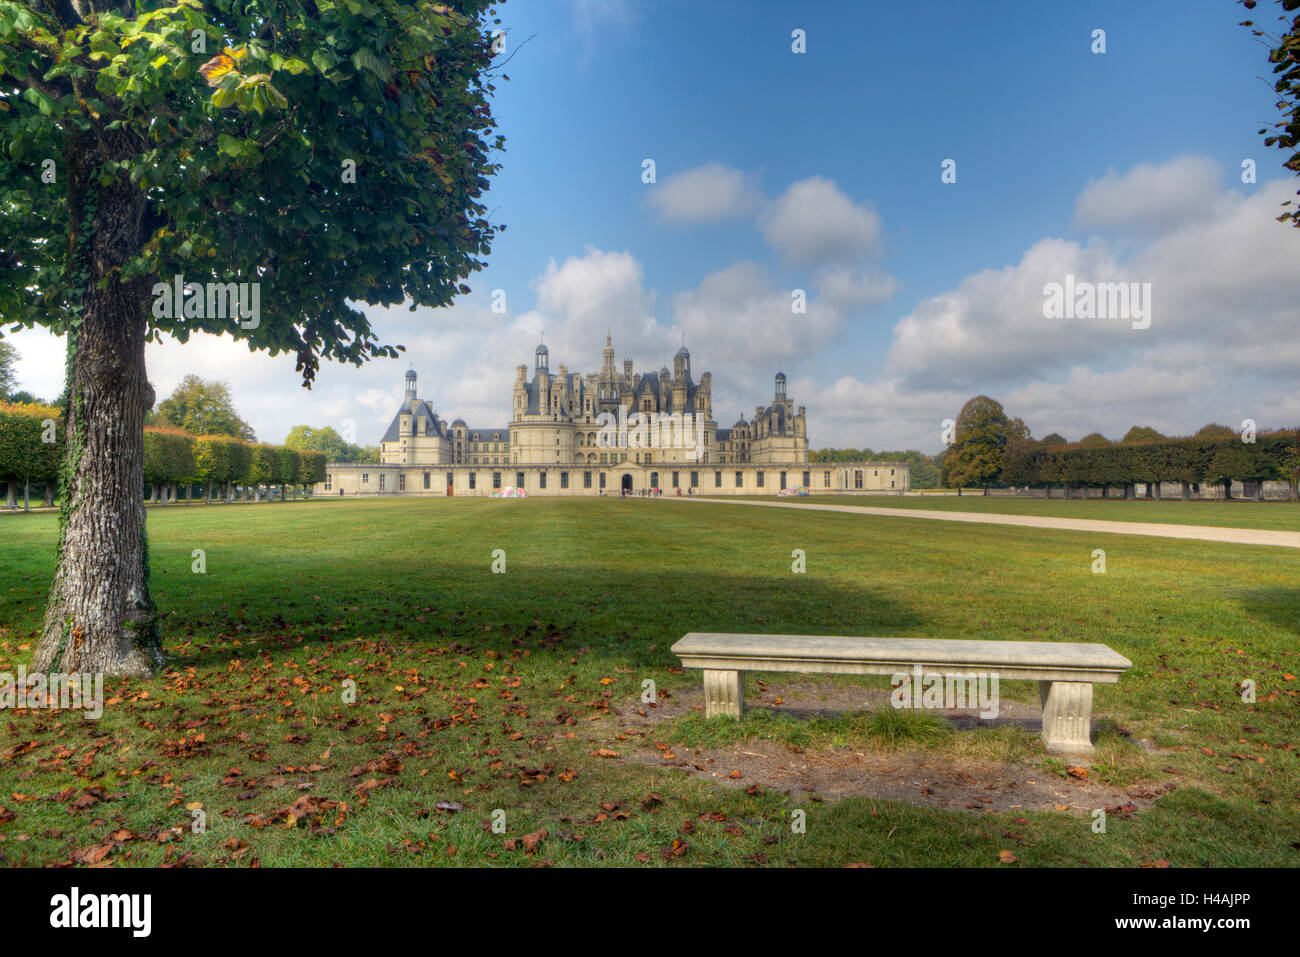 Château de Chambord, castle grounds, Loire, France, Europe Stock Photo